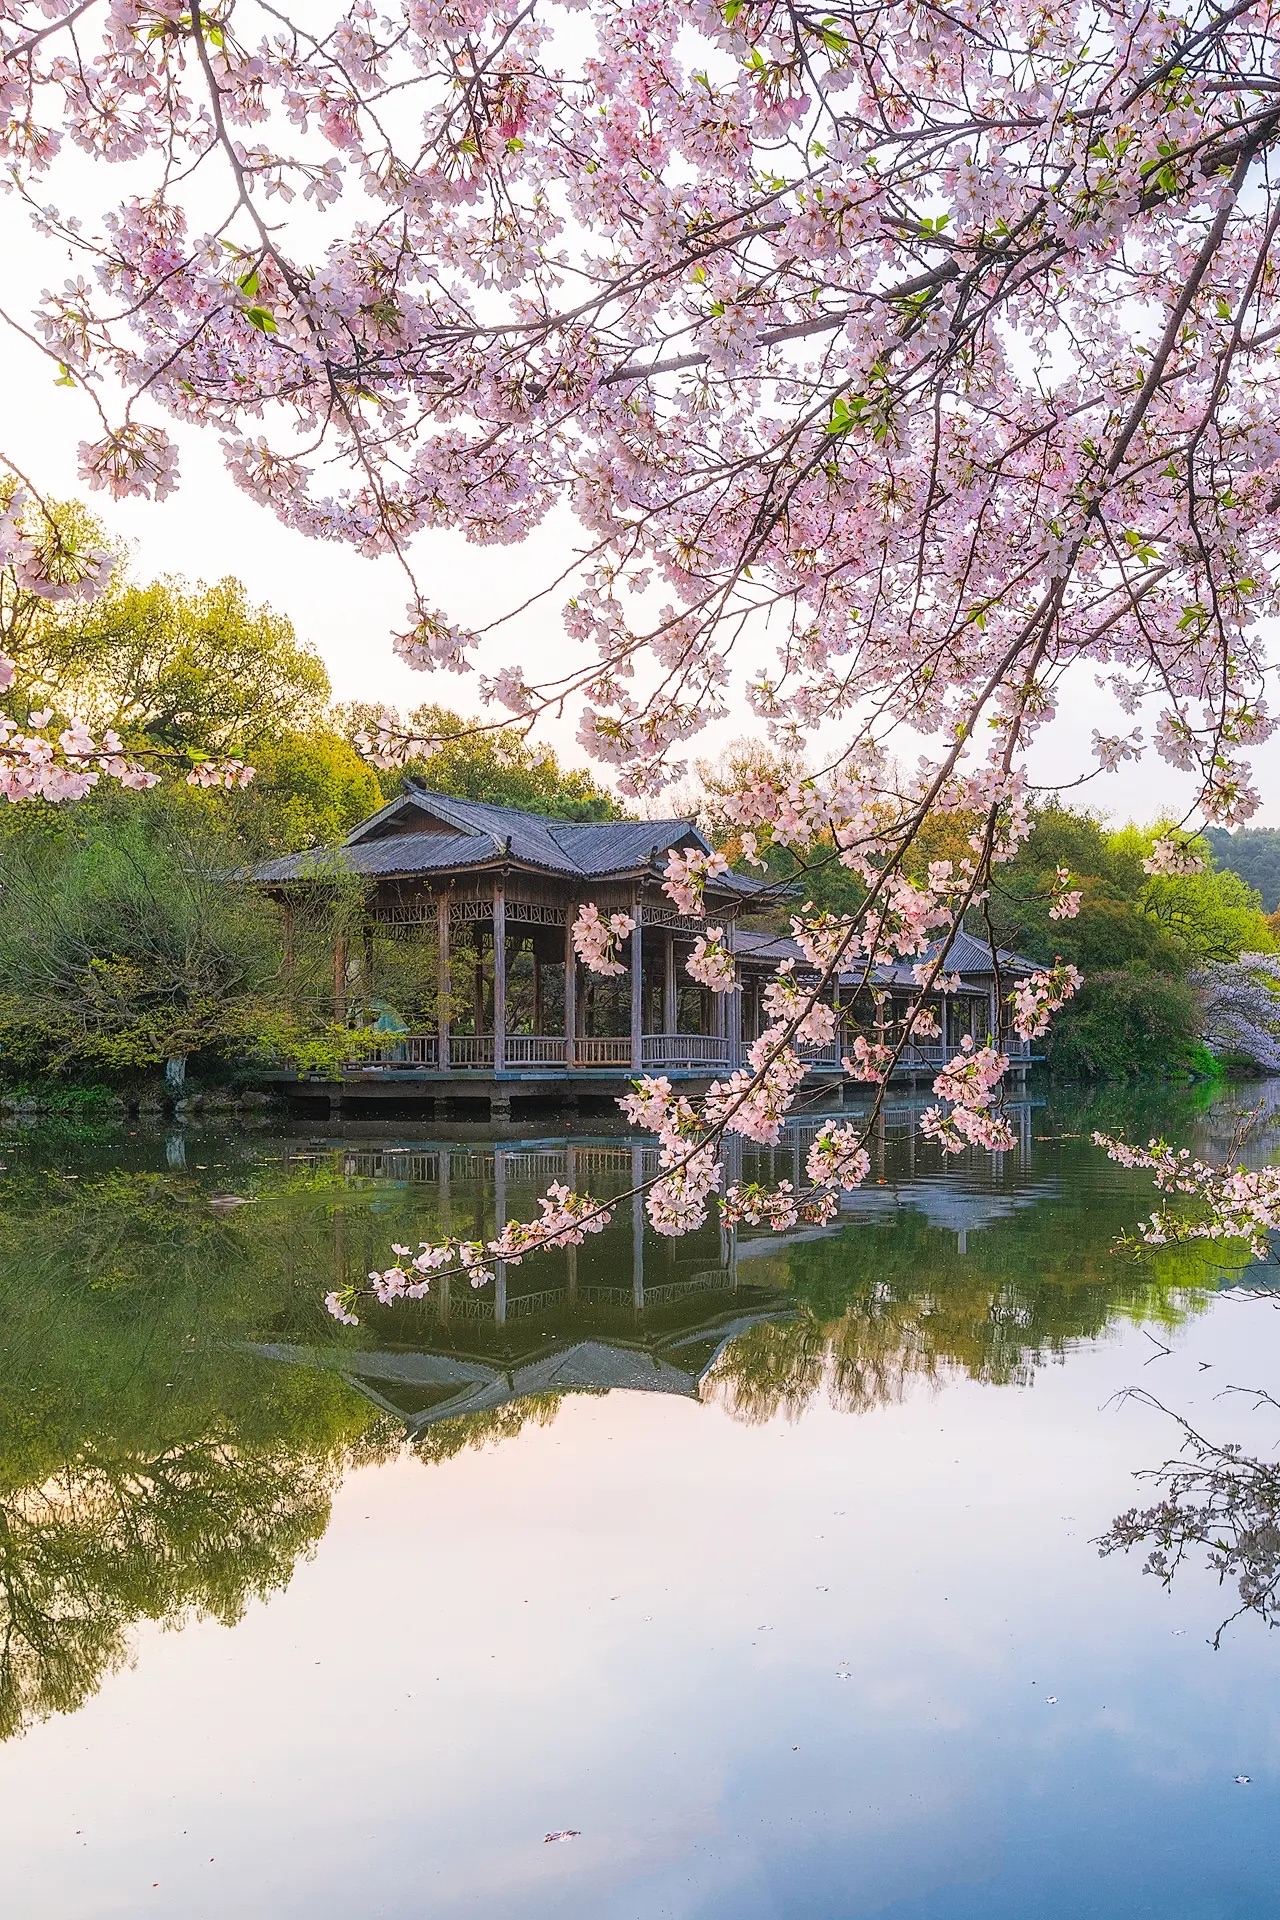 9张图!告诉你杭州西湖的春天有多美丽!